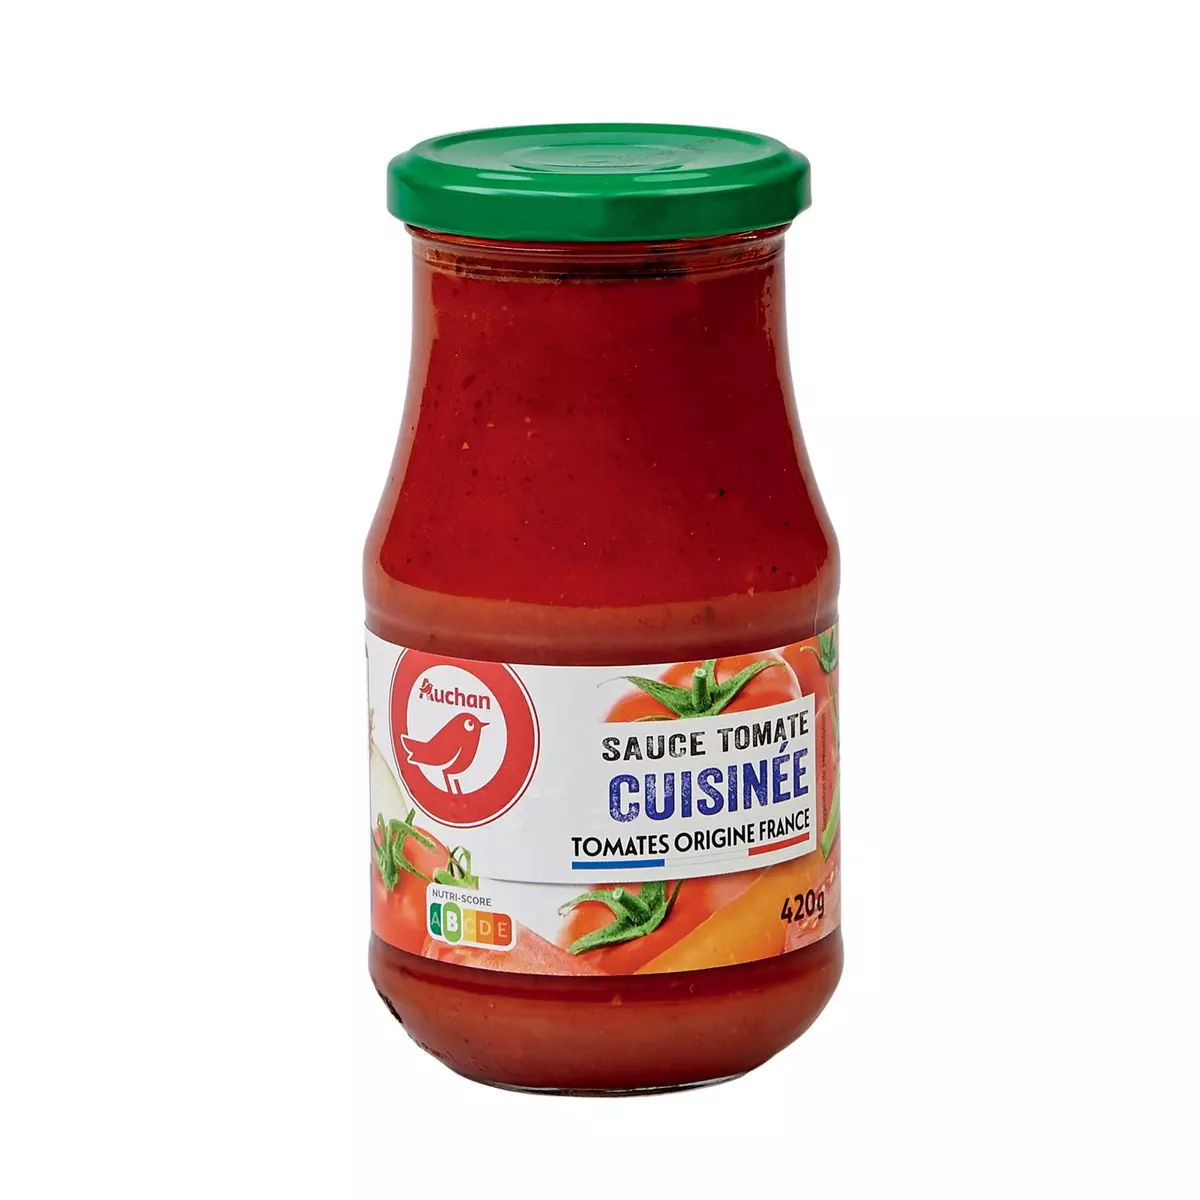 AUCHAN Sauce tomate cuisinée origine France en bocal 420g